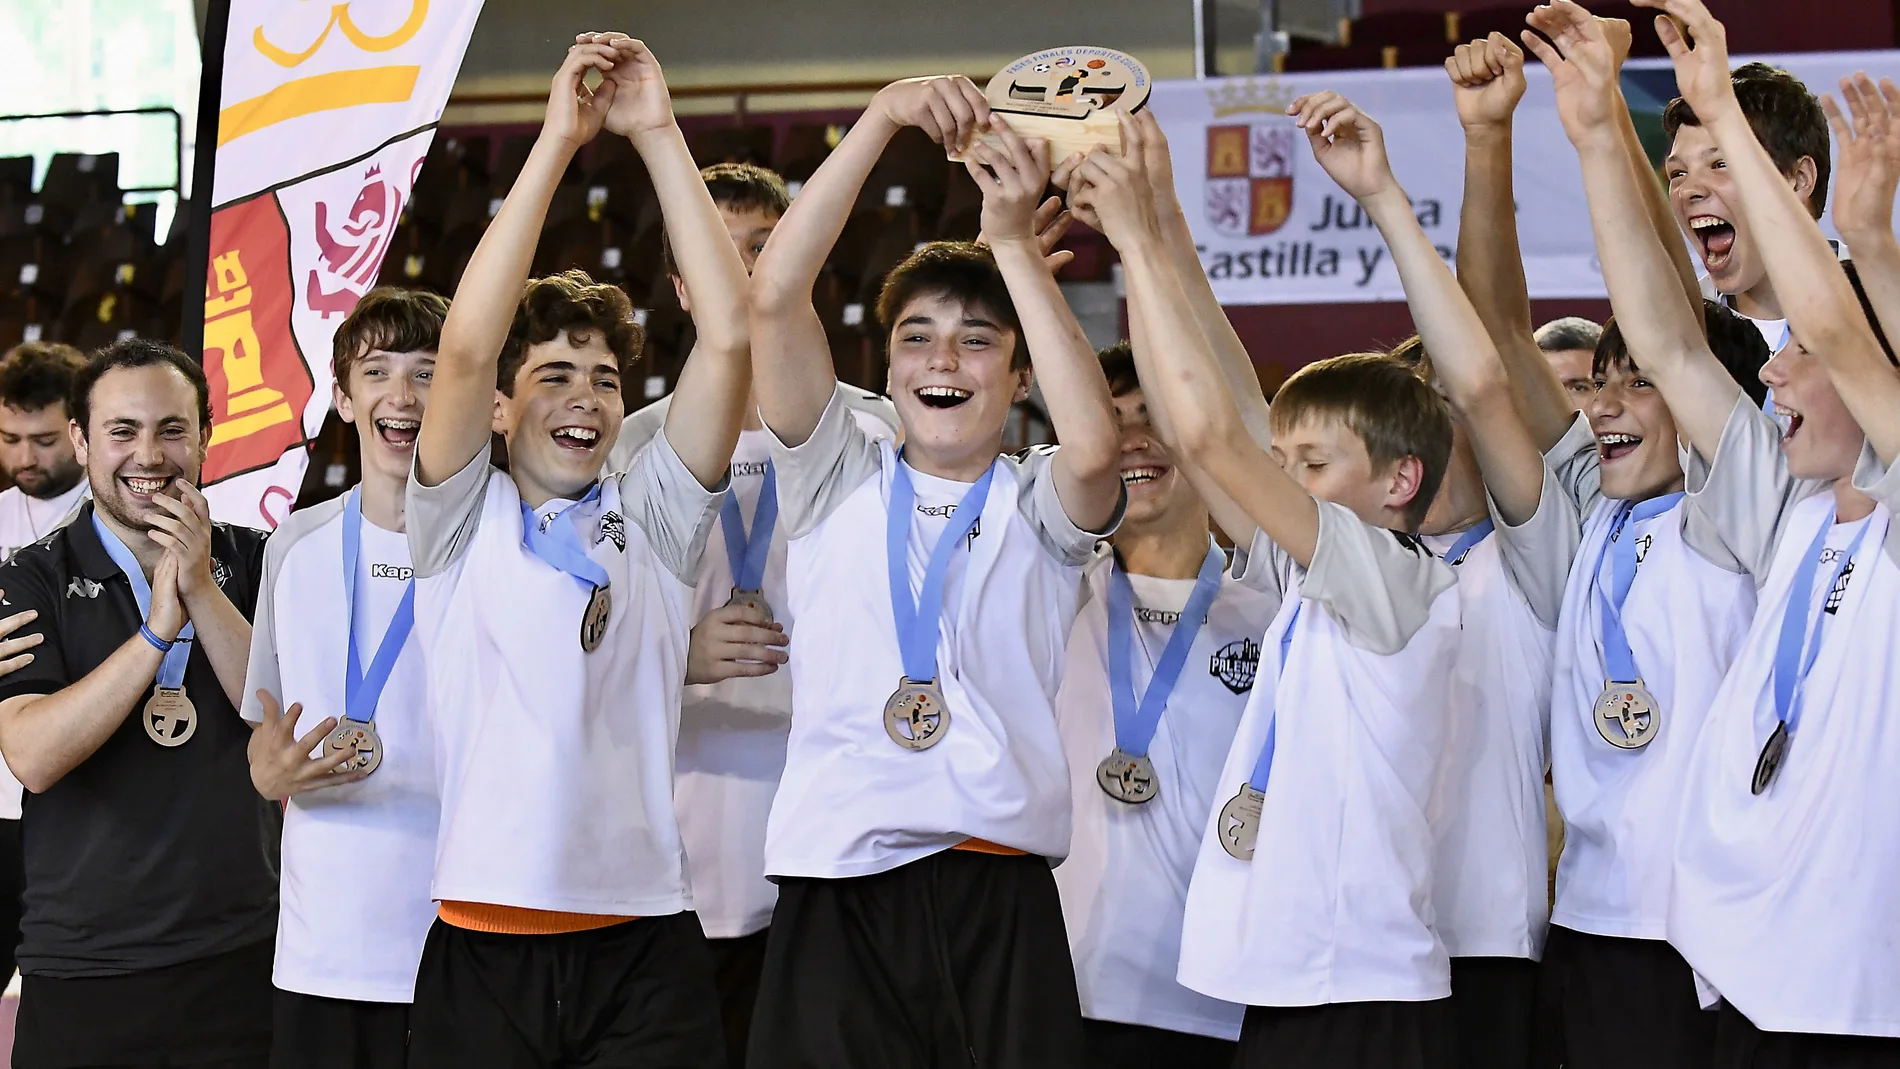 Entrega de los trofeos de la Fase Final del Campeonato de Castilla y León en Edad Escolar de Deportes Colectivos